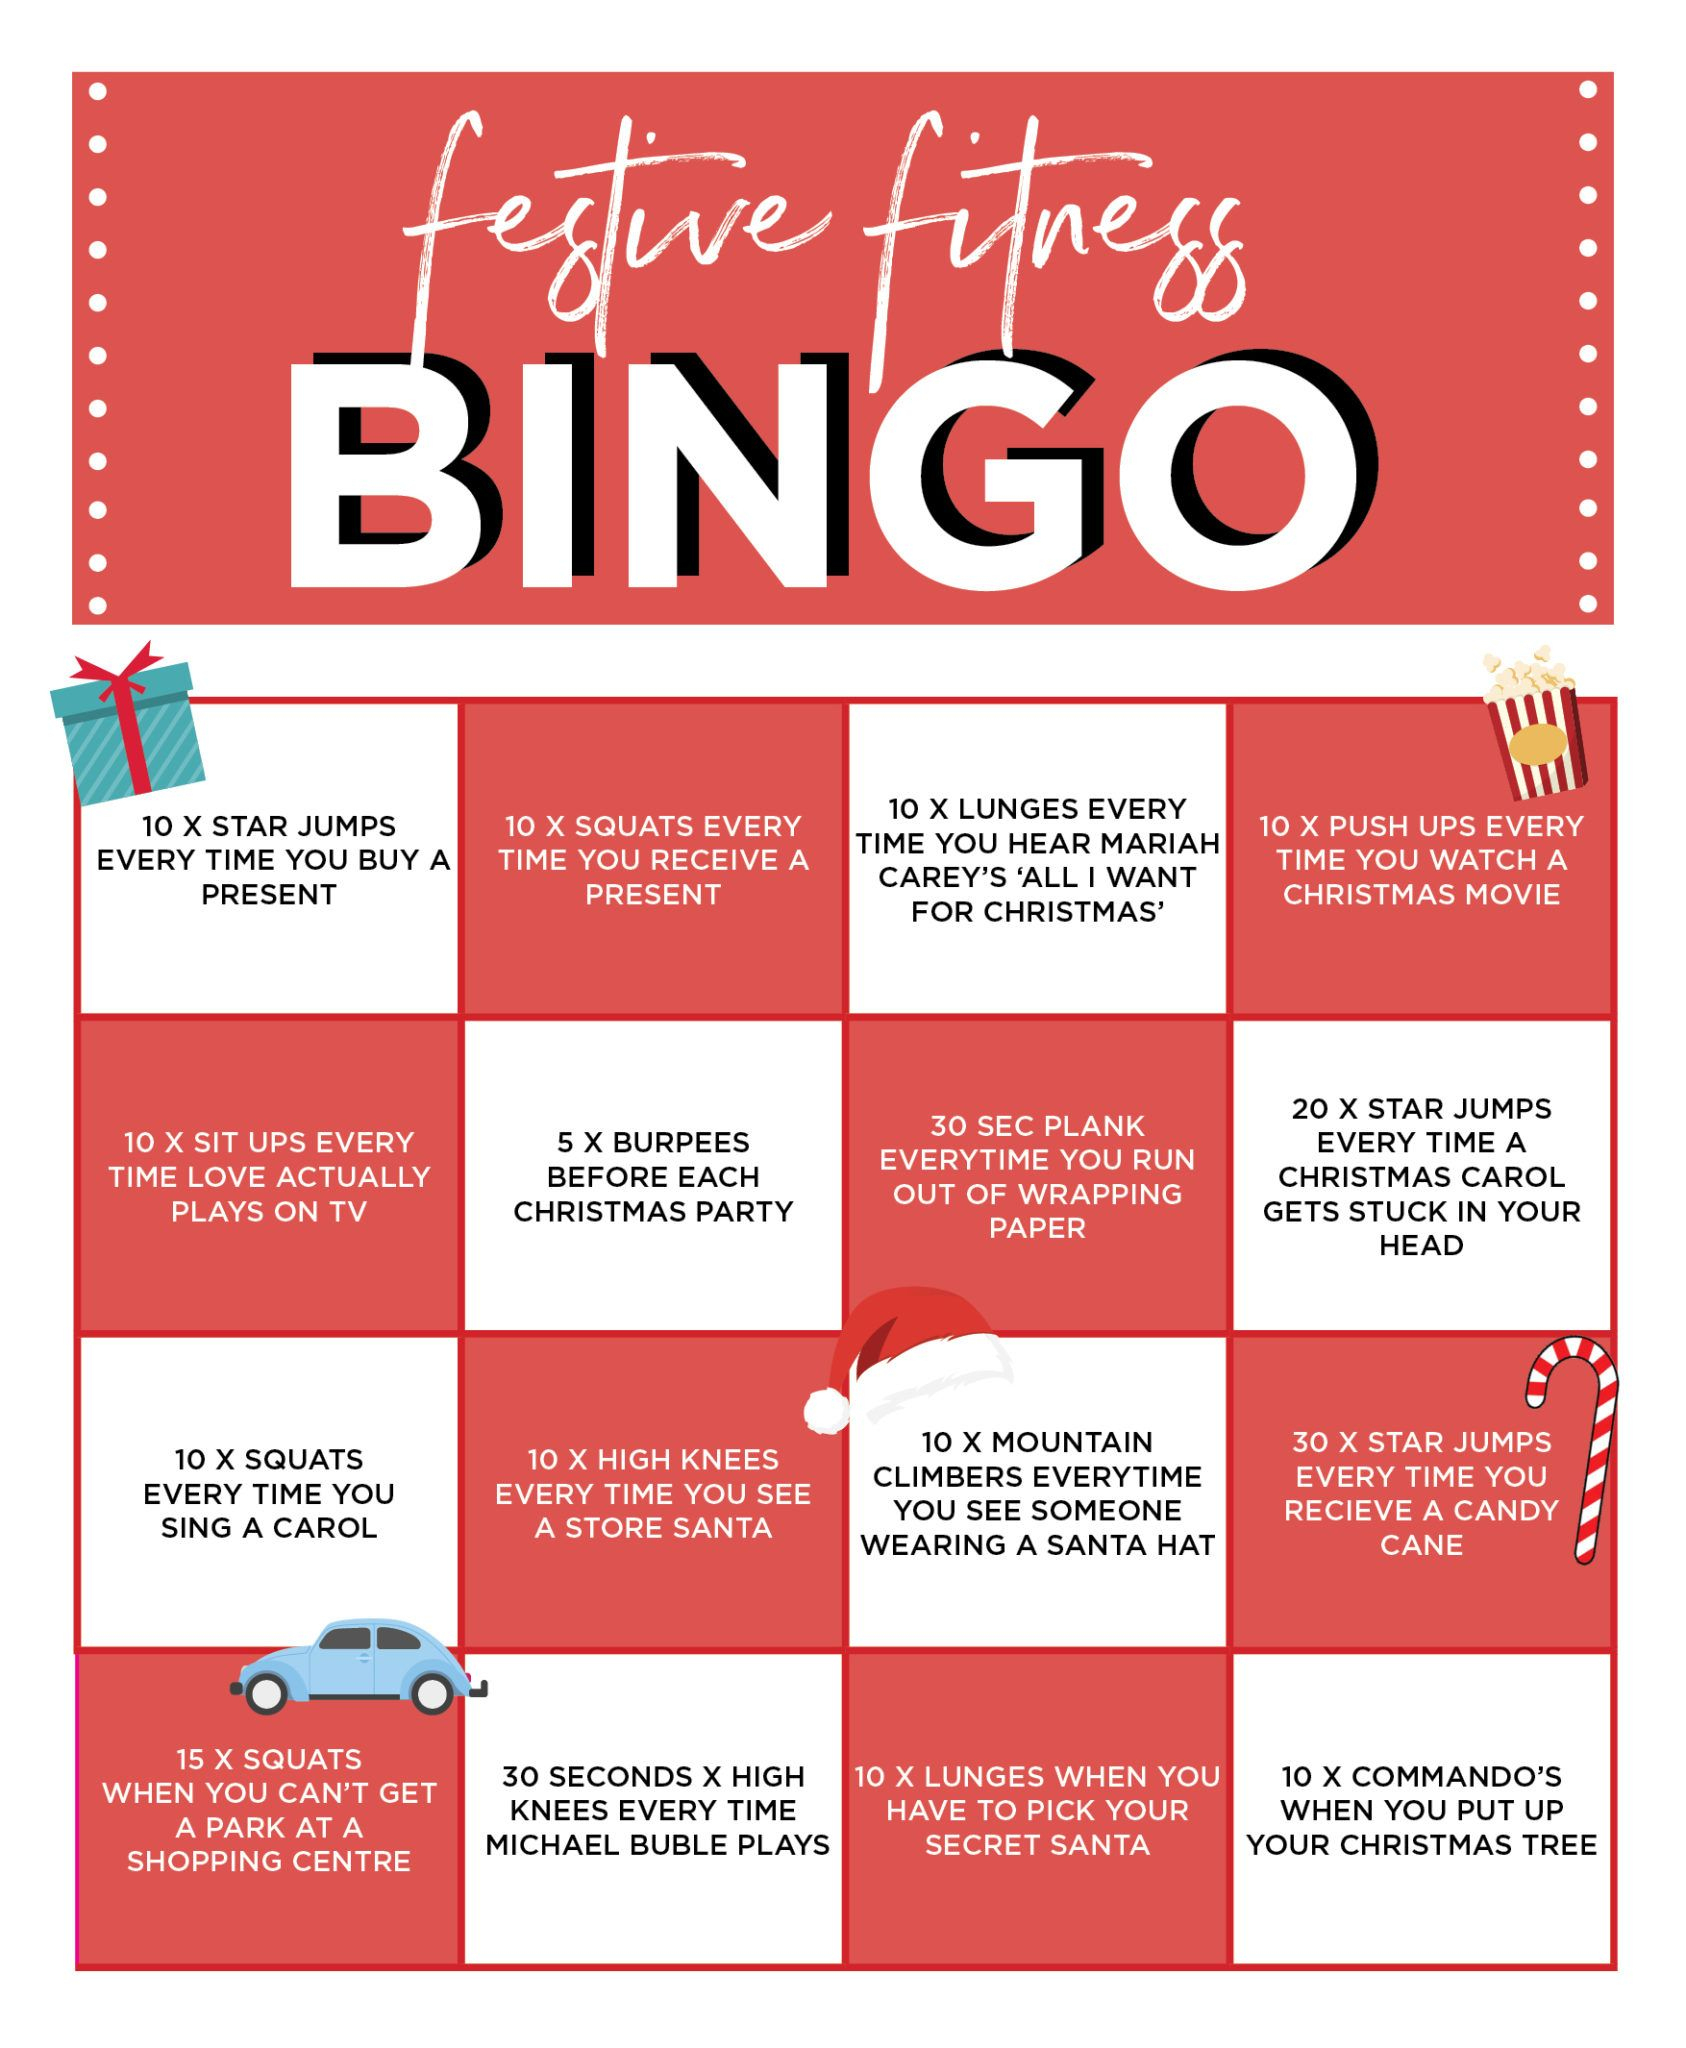 Festive Fitness Bingo | Card Workout, Bingo, Movie Workouts